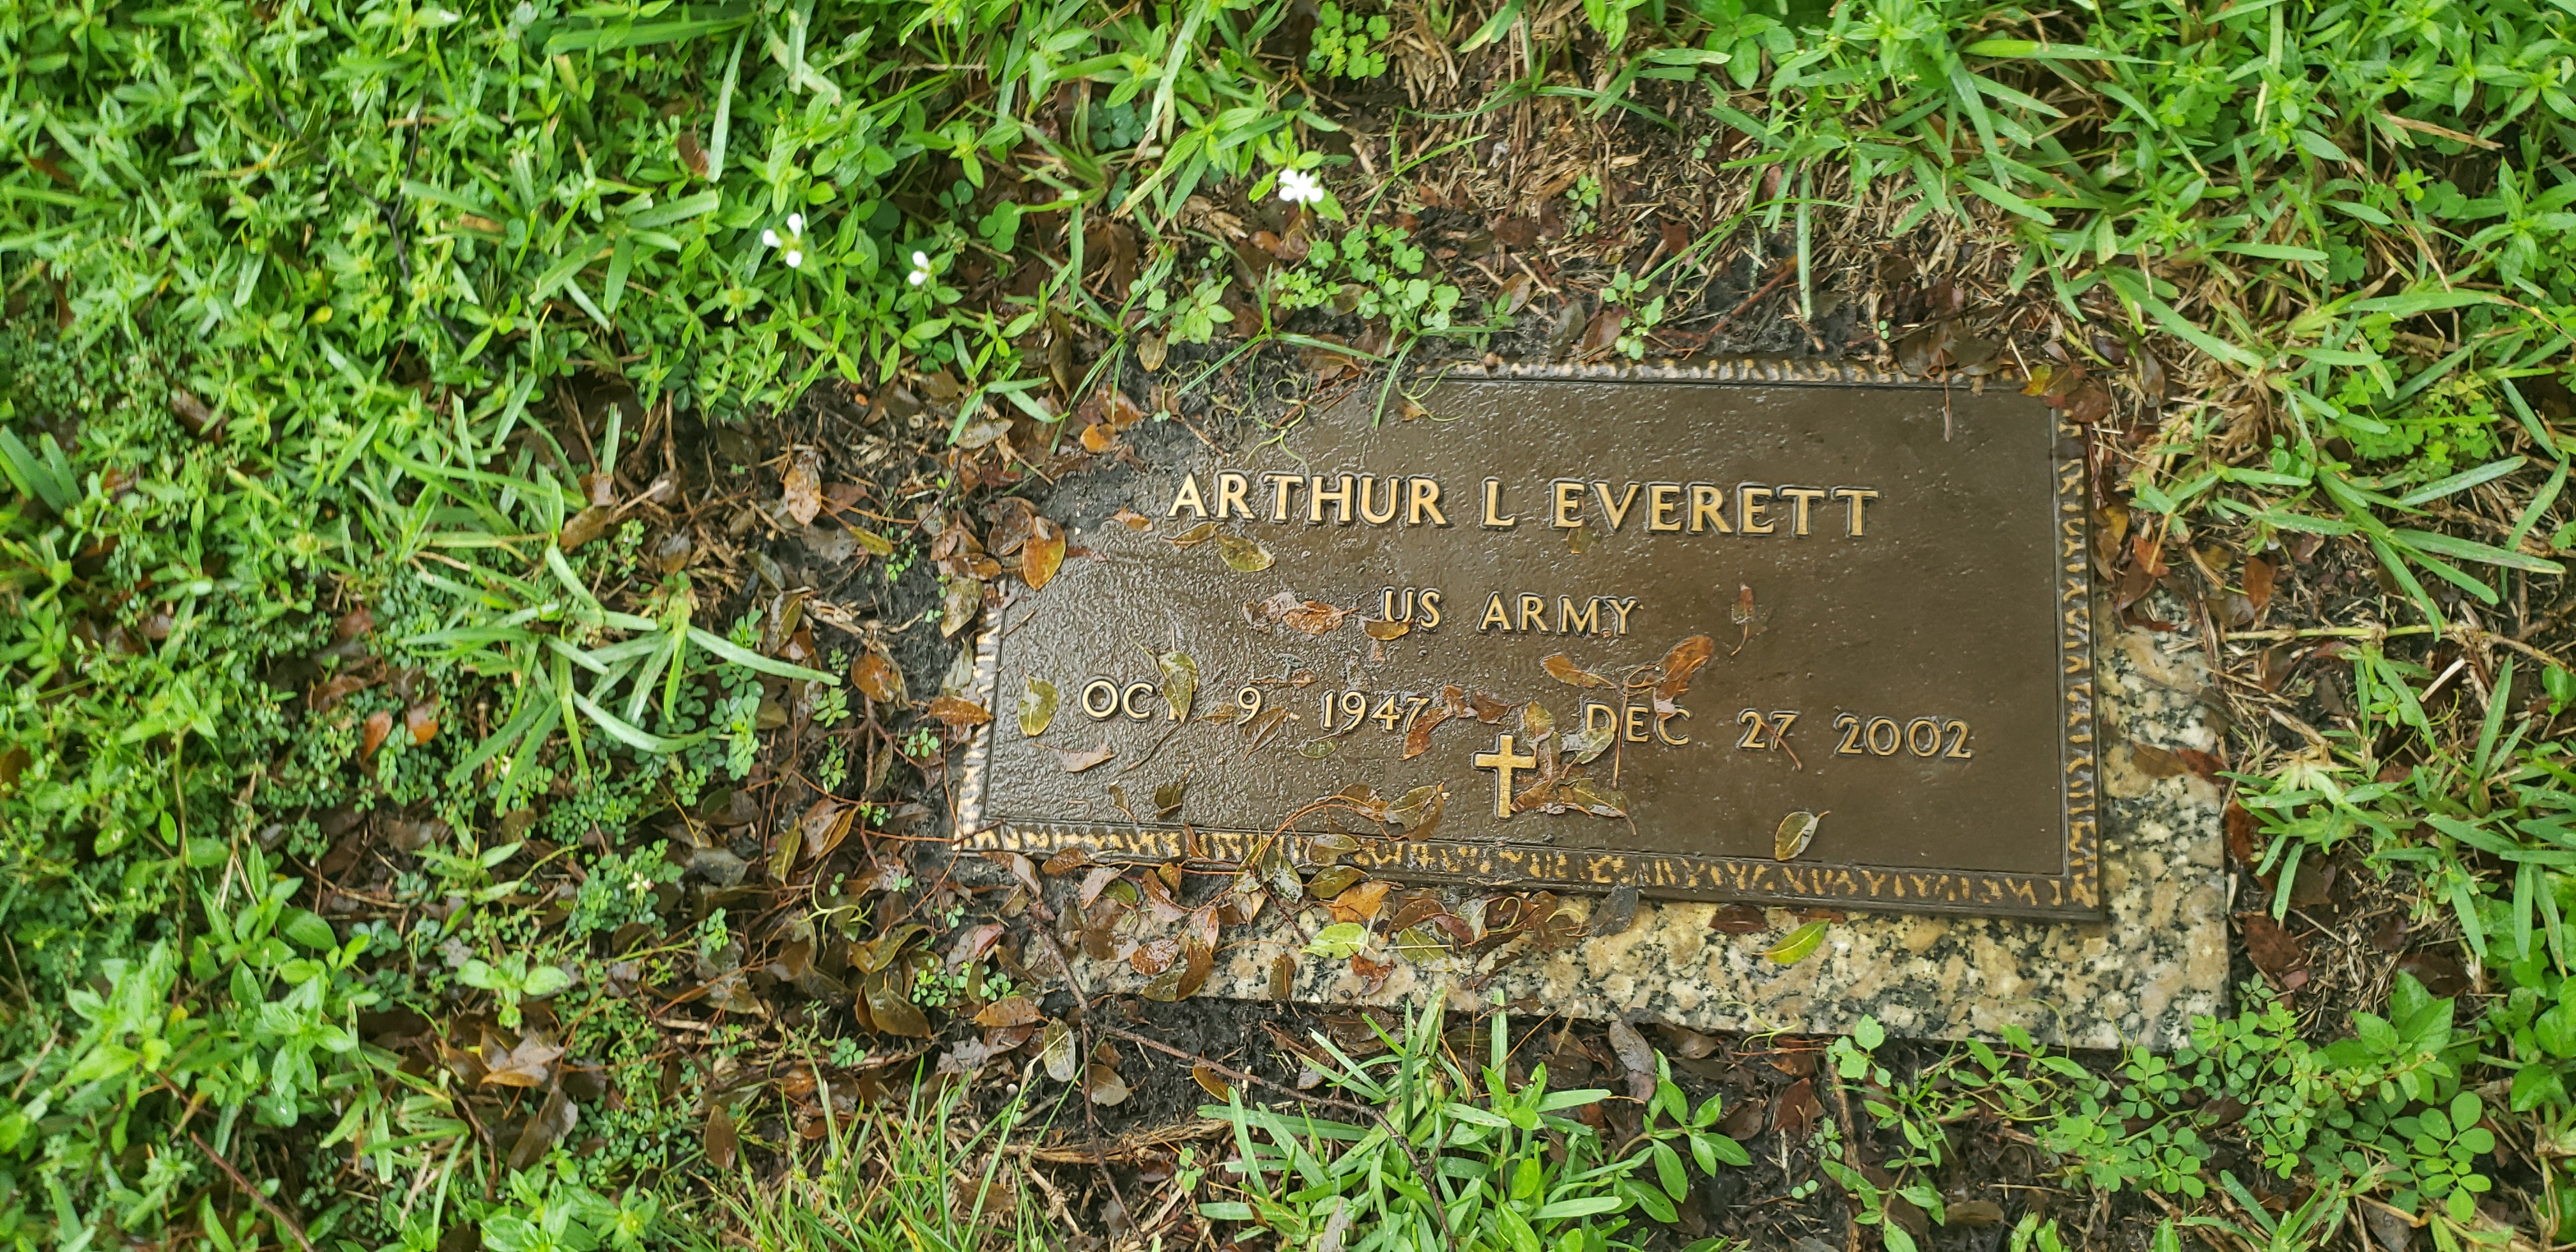 Arthur L Everett